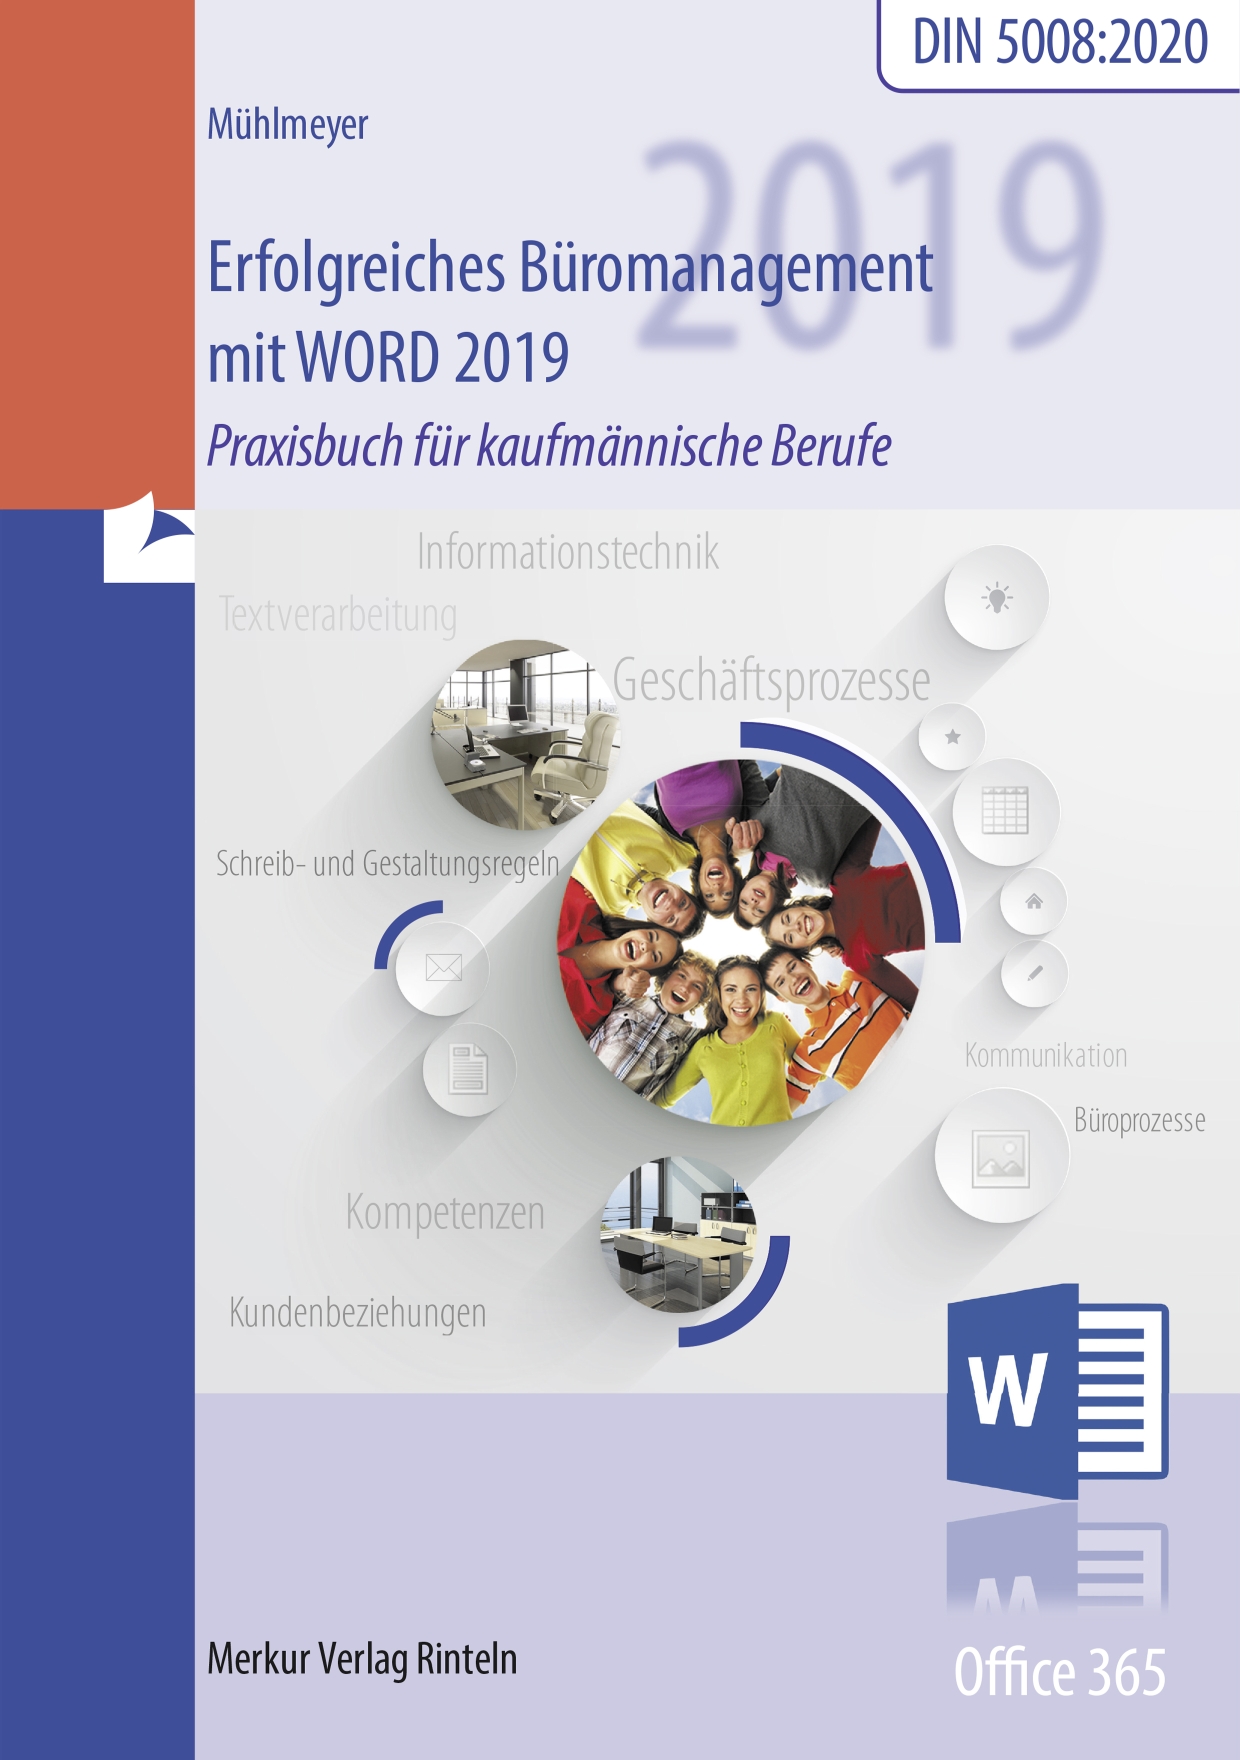 Erfolgreiches Büromanagement mit Word 2019 Praxisbuch für kaufmännische Berufe